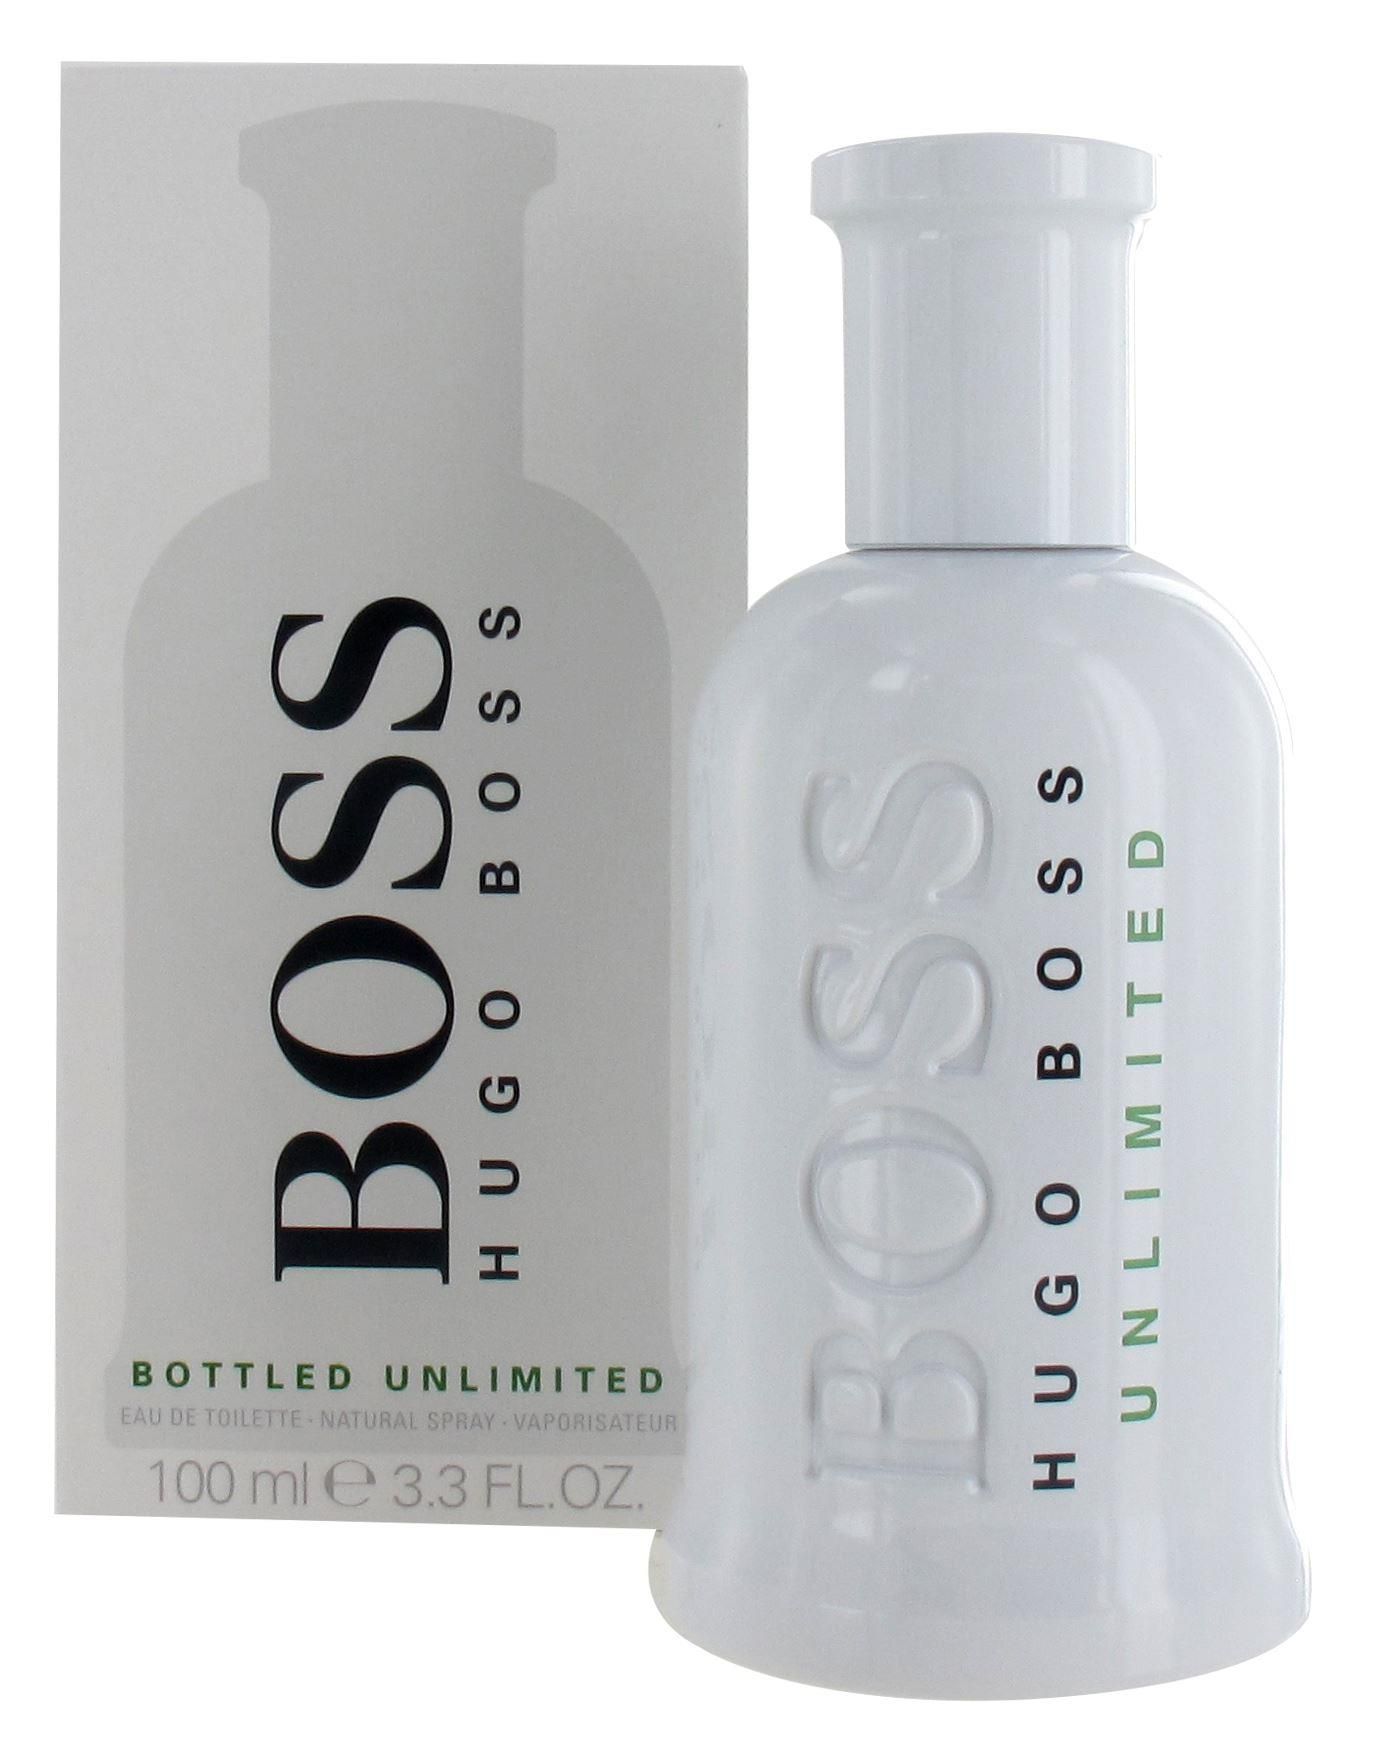 hugo boss bottled unlimited edt 100 ml